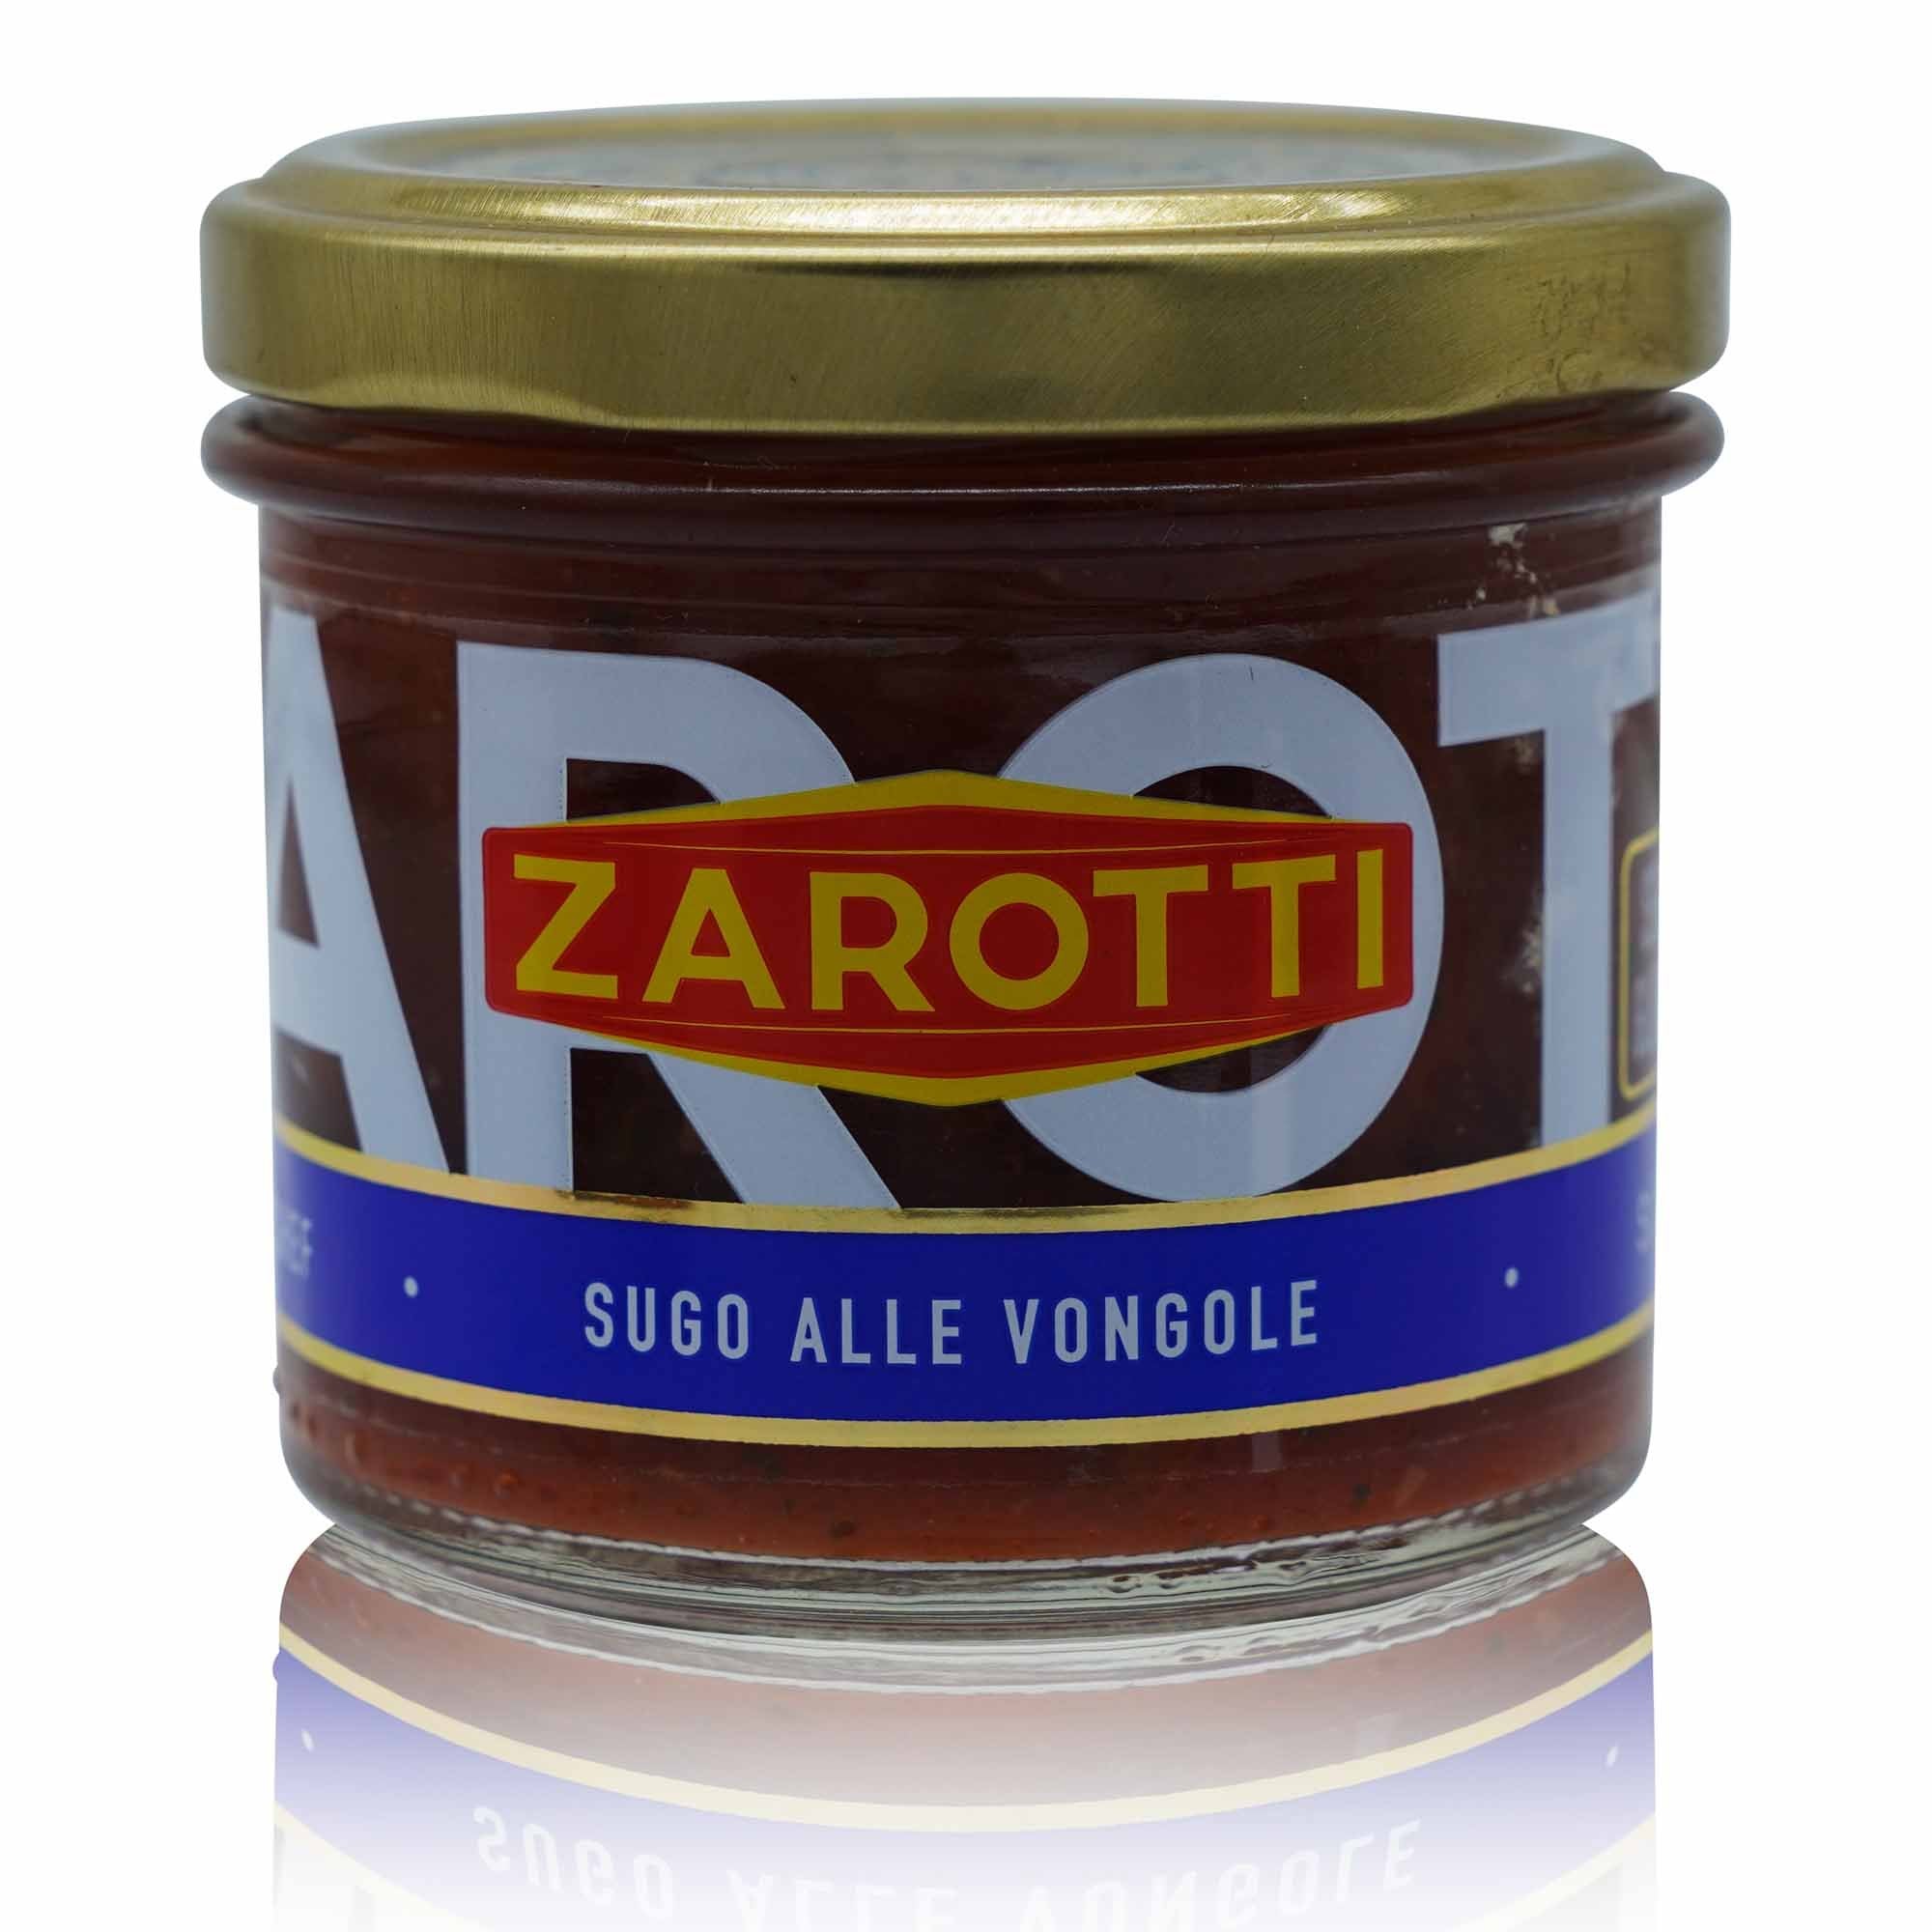 ZAROTTI Sugo alle Vongole – Venusmuscheln - Soße - 0,110kg - italienisch - einkaufen.de